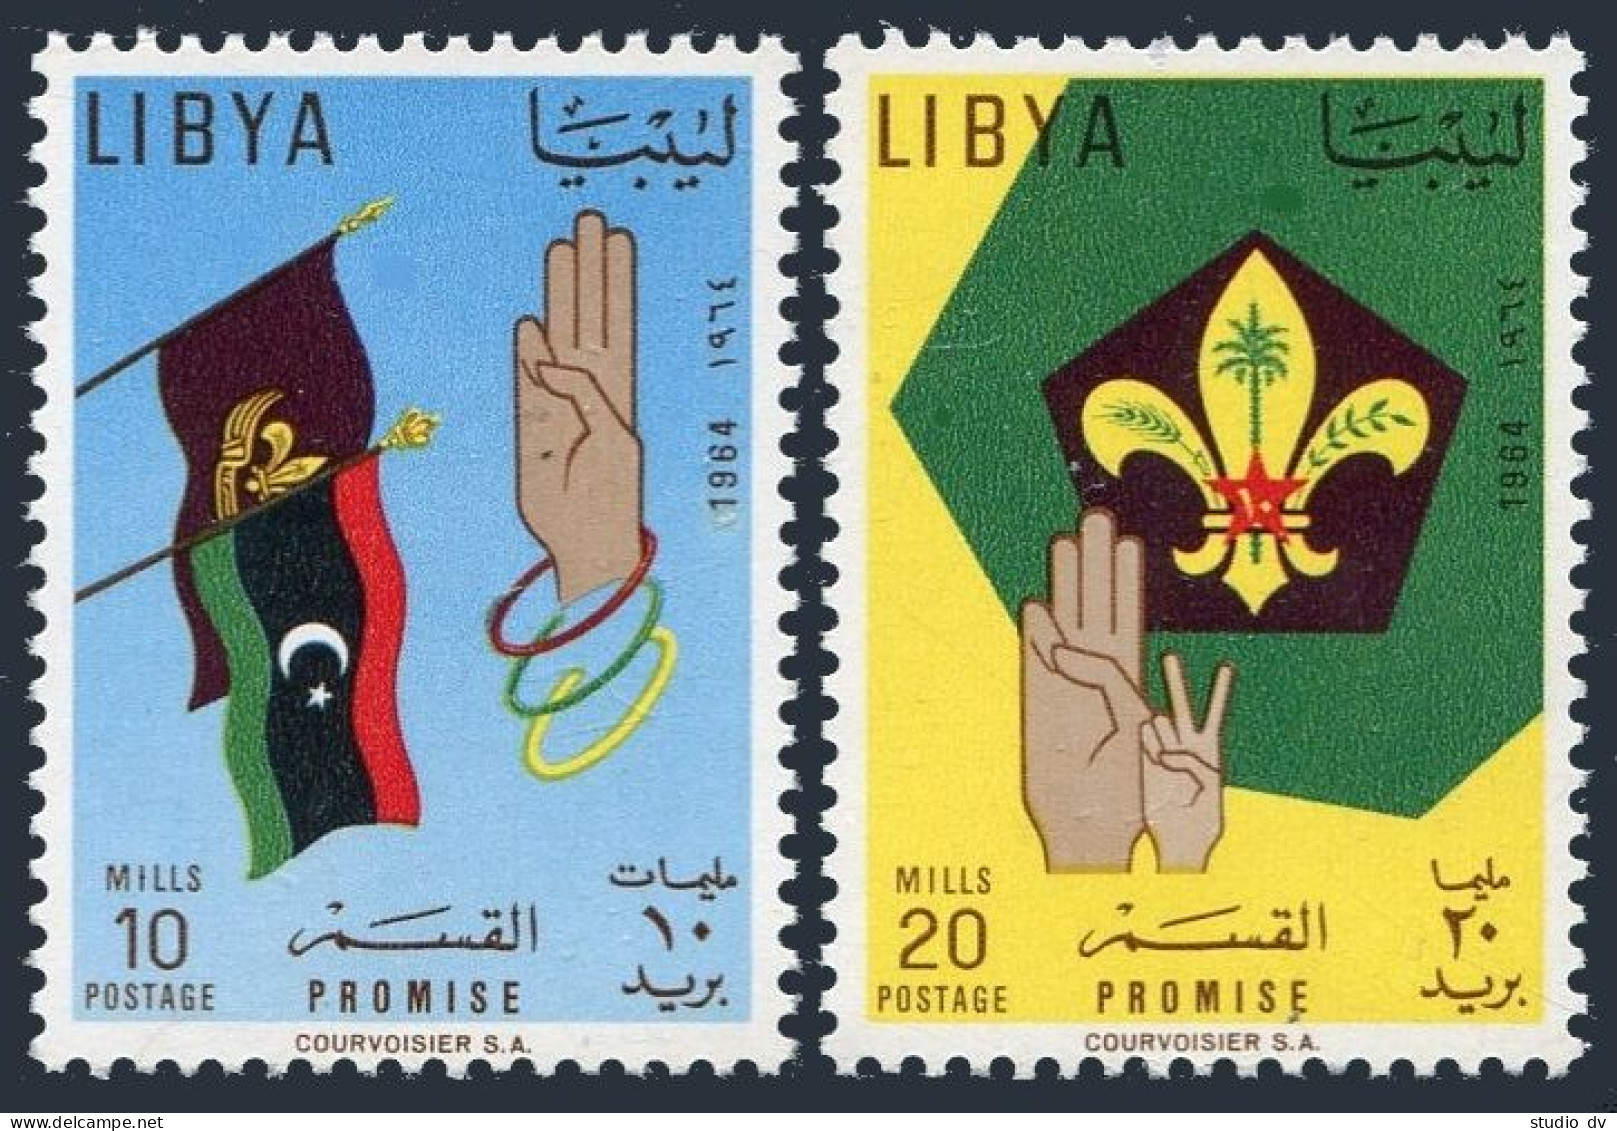 Libya 252-253,253a,MNH.Michel 154-155,Bl.7. Boy Scout Headquarters,1964.Flags. - Libyen